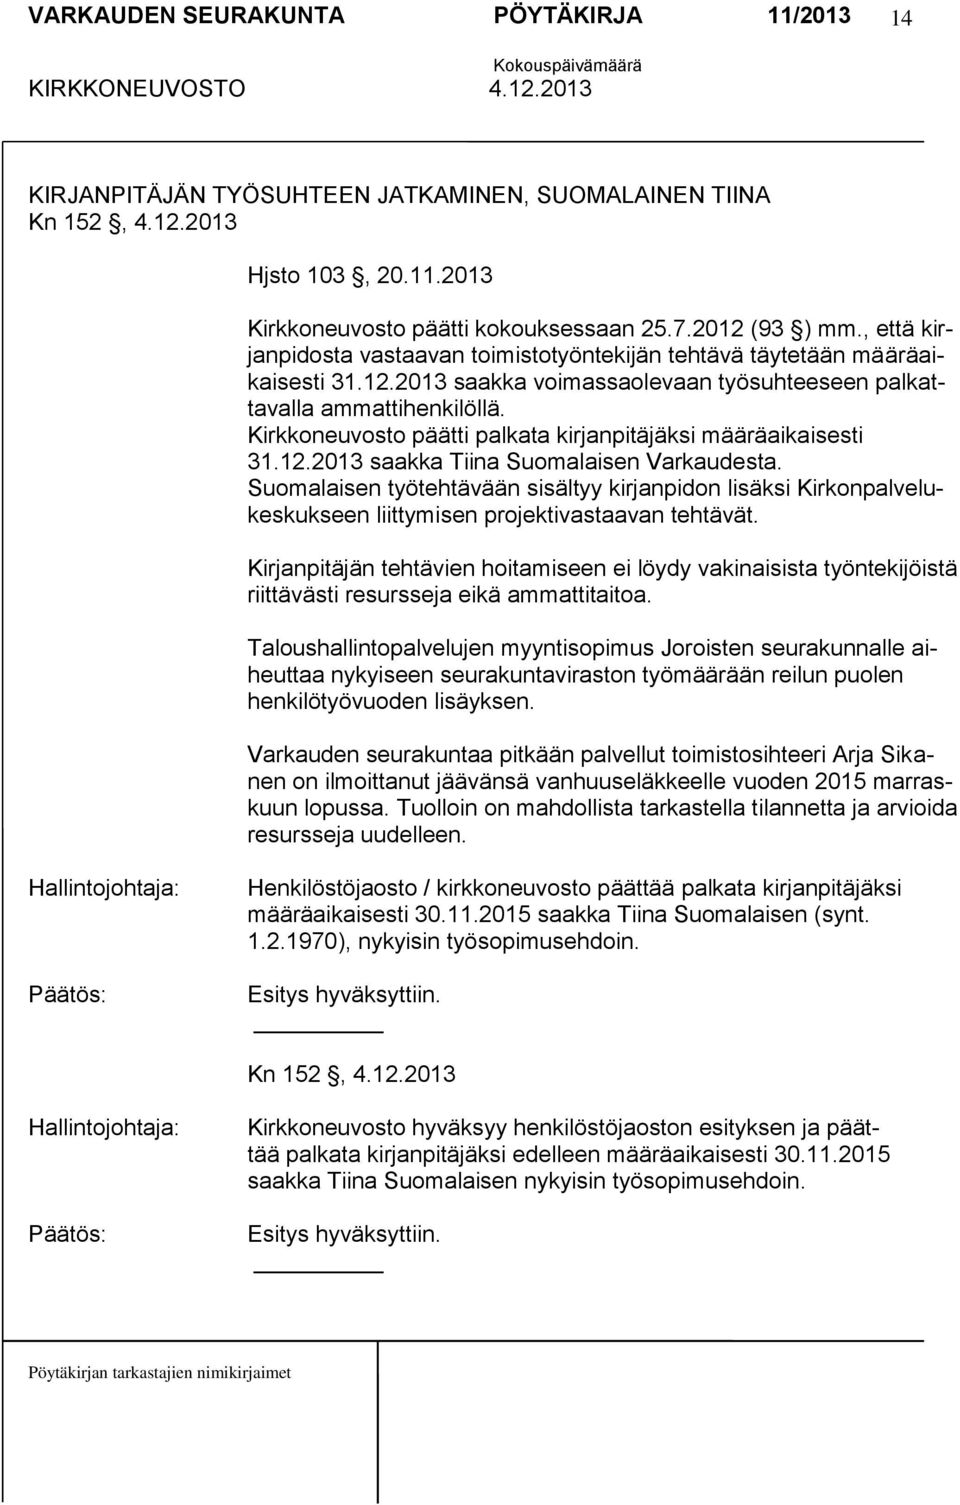 Kirkkoneuvosto päätti palkata kirjanpitäjäksi määräaikaisesti 31.12.2013 saakka Tiina Suomalaisen Varkaudesta.